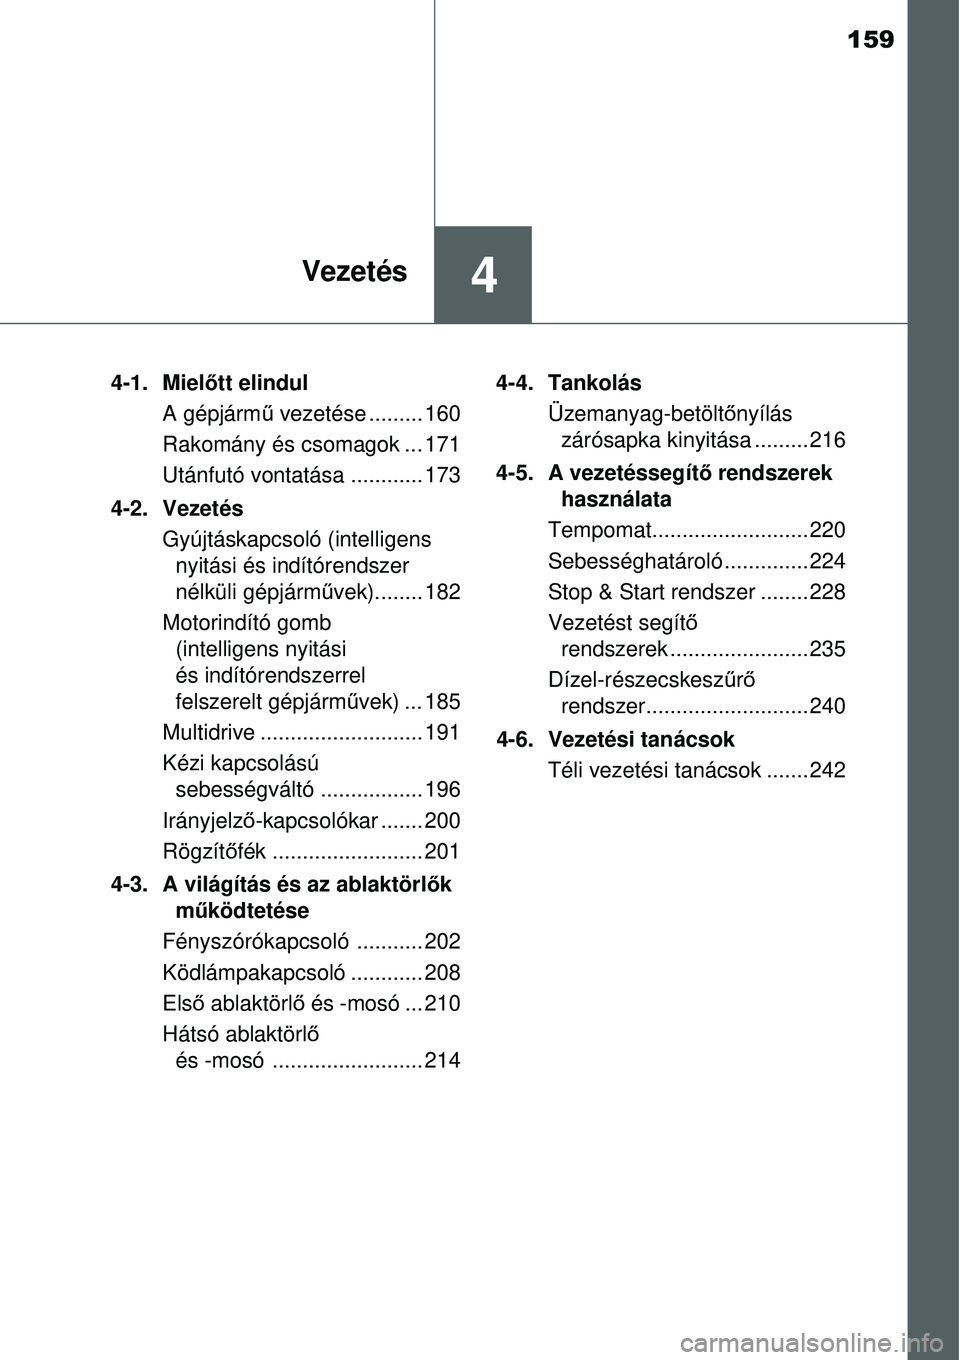 TOYOTA YARIS 2015  Kezelési útmutató (in Hungarian) 159
4Vezetés
4-1. Mielőtt elindul
A gépjármű vezetése ......... 160
Rakomány és csomagok ... 171
Utánfutó vontatása ............ 173
4-2. Vezetés
Gyújtáskapcsoló (intelligens
nyitási �